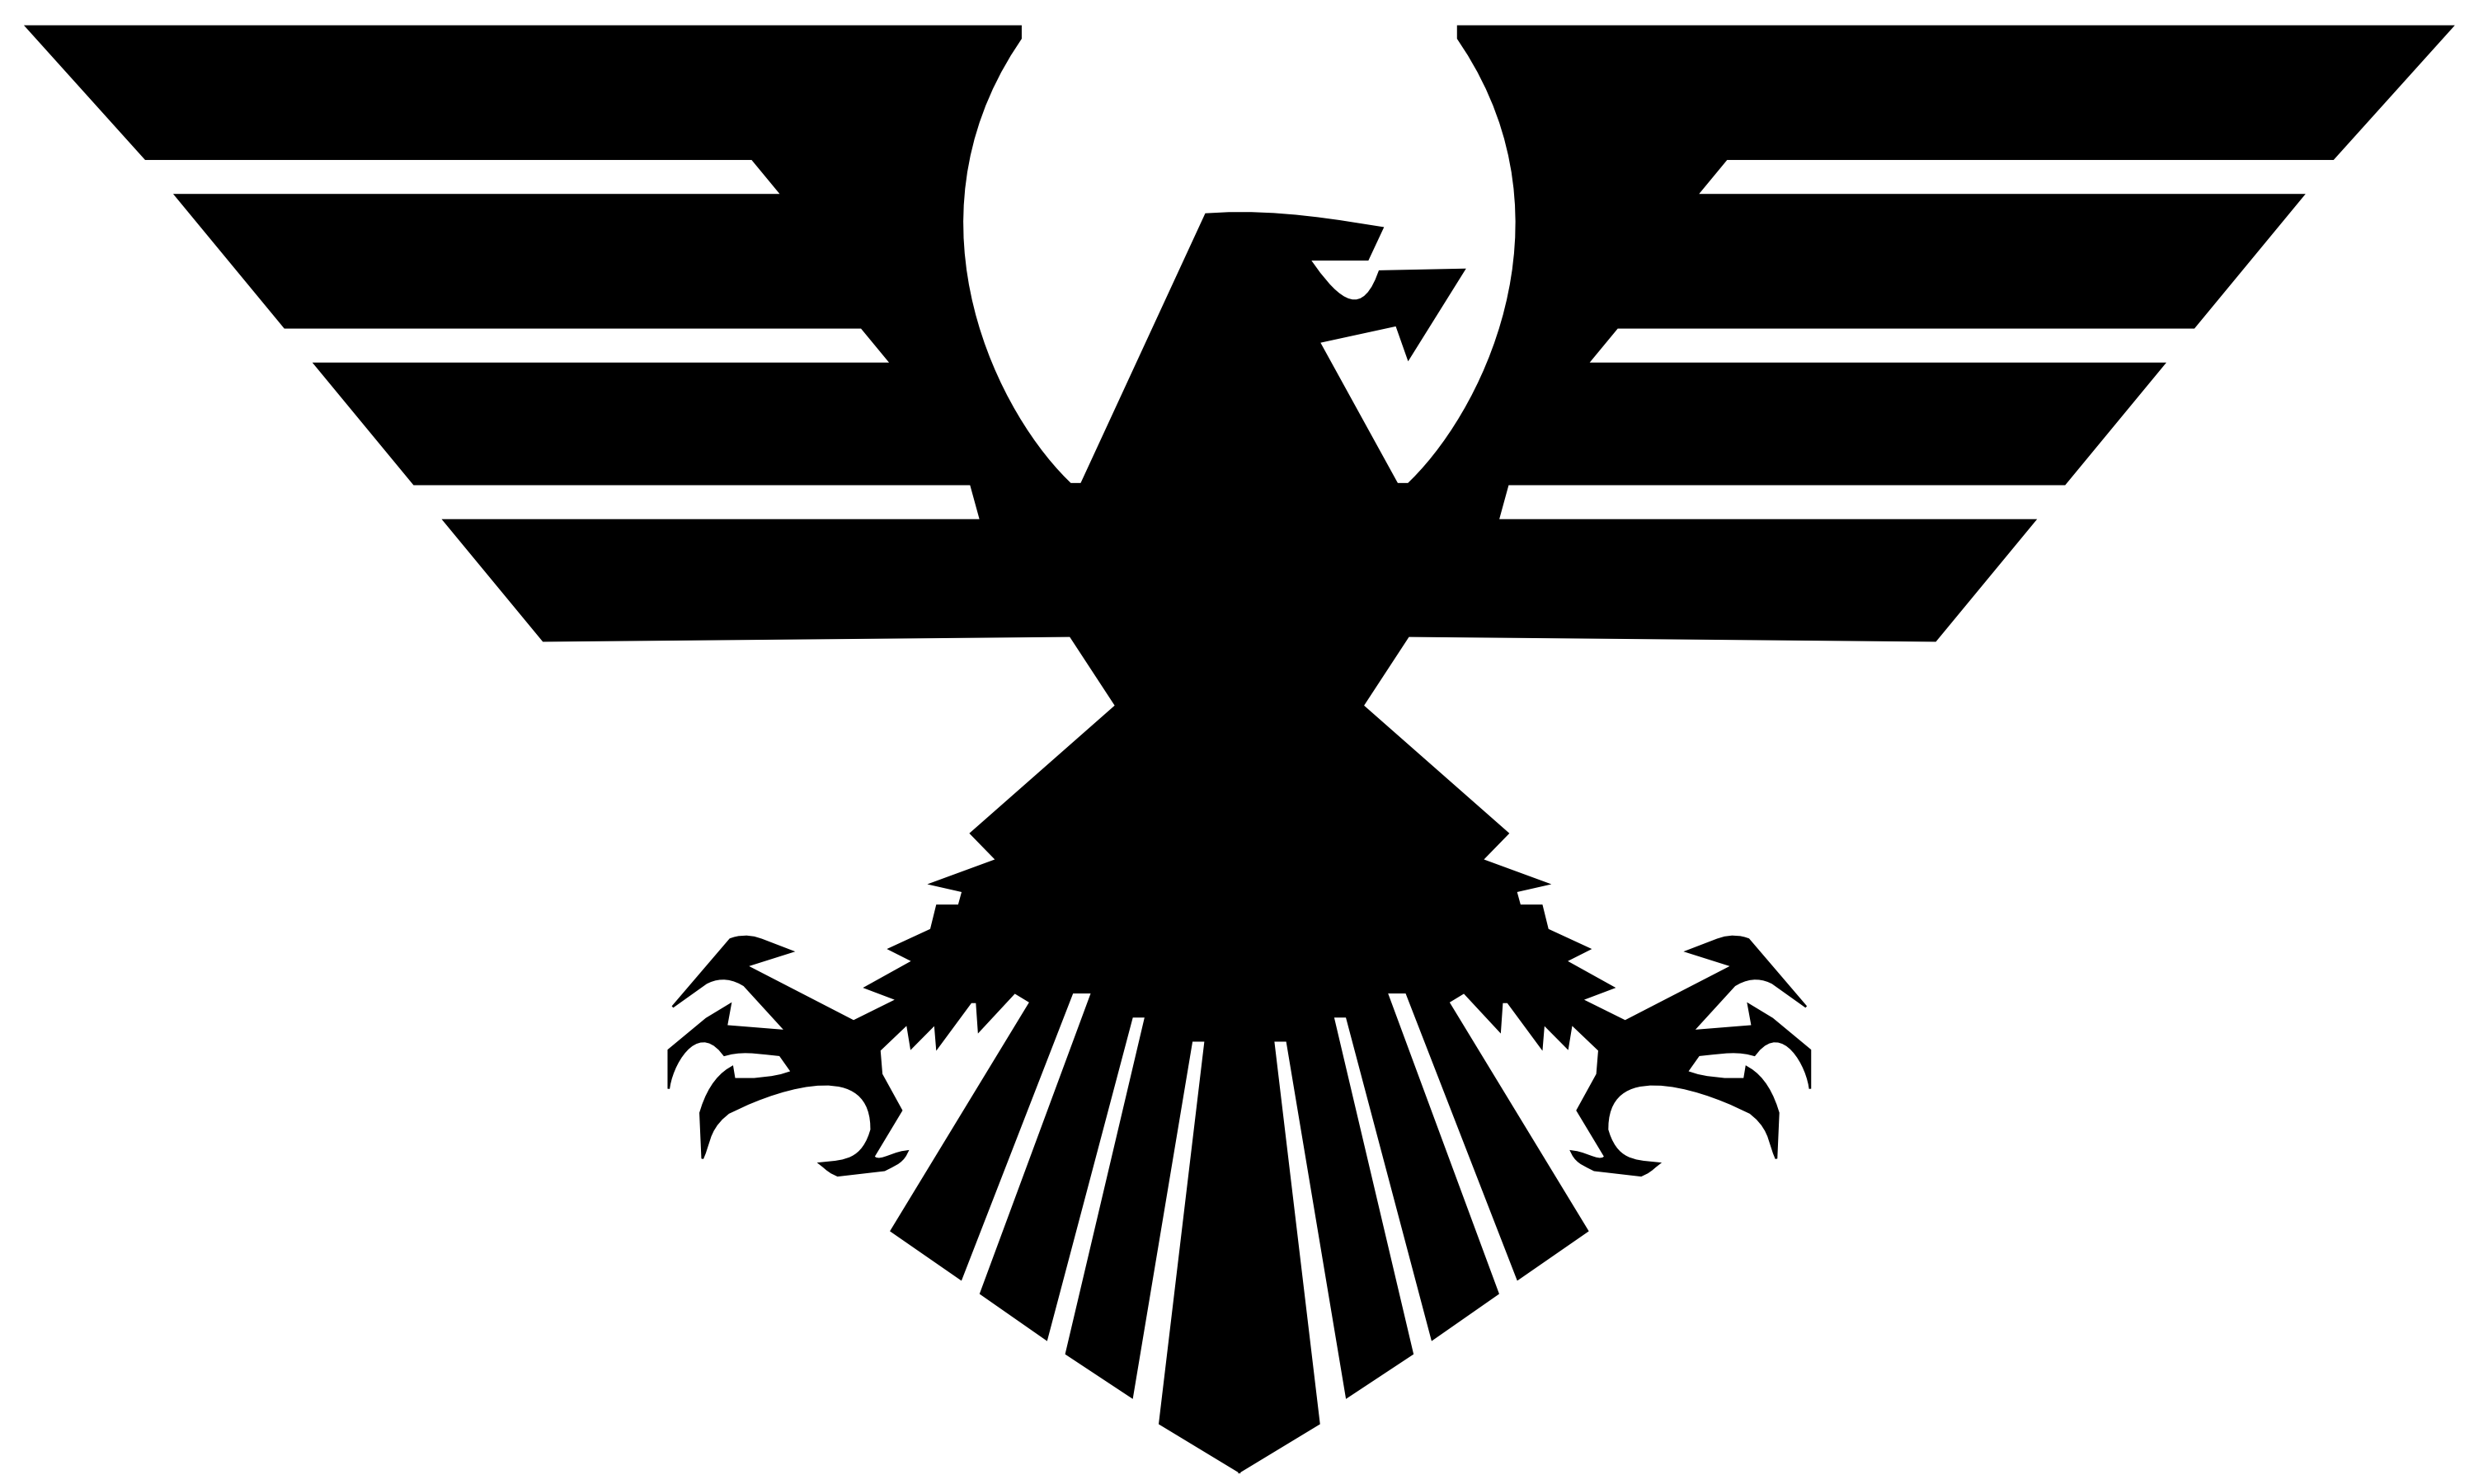 Eagle black logo PNG image, free download